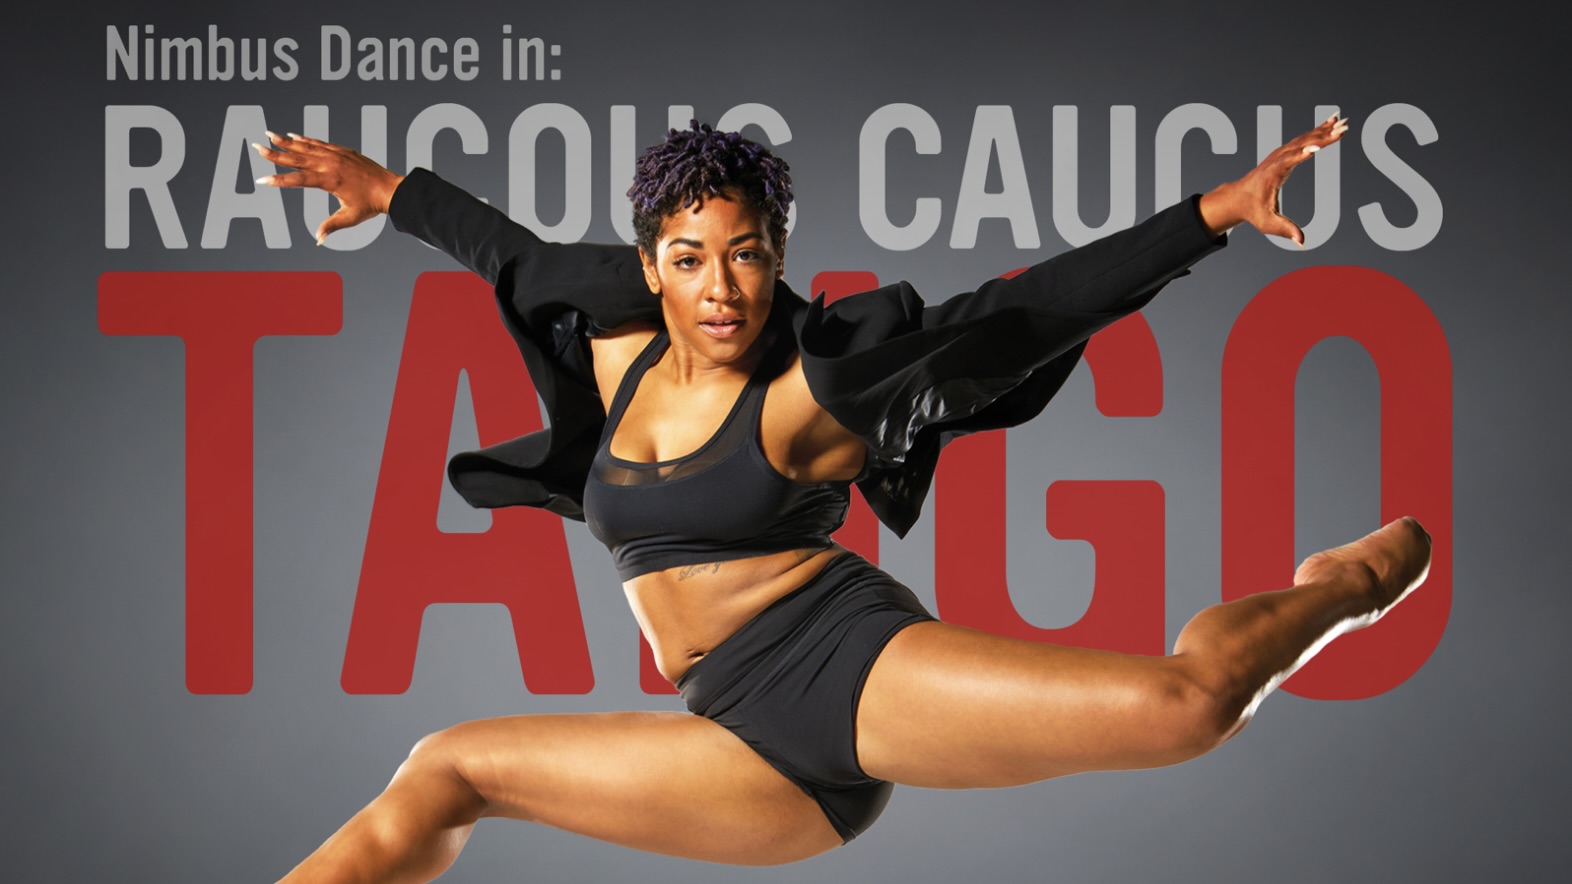 Dance Review: “Raucus Caucus Tango” at Nimbus Arts Center